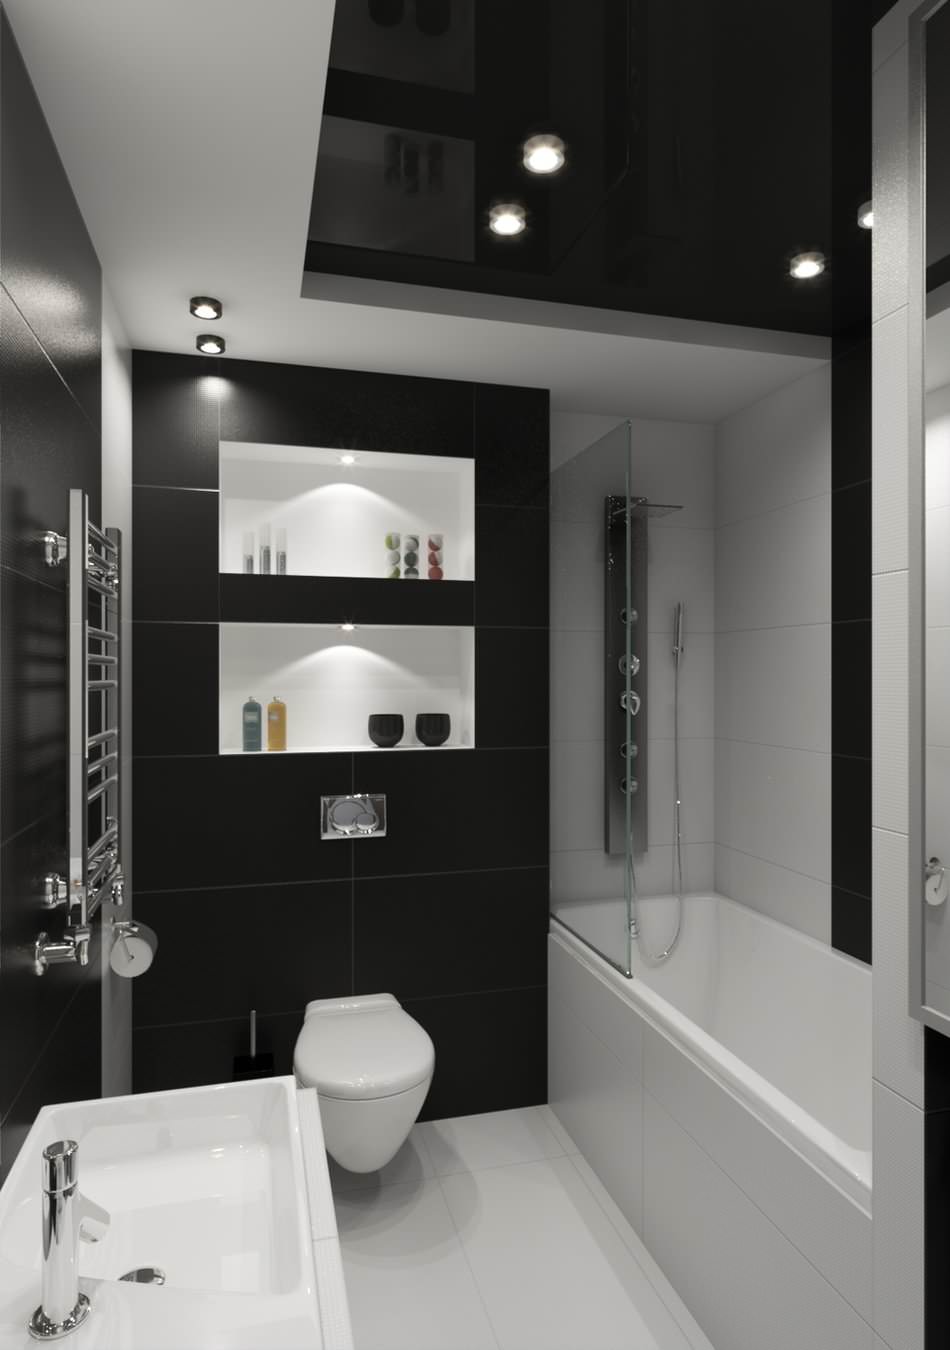 Baño de techo alto en blanco y negro